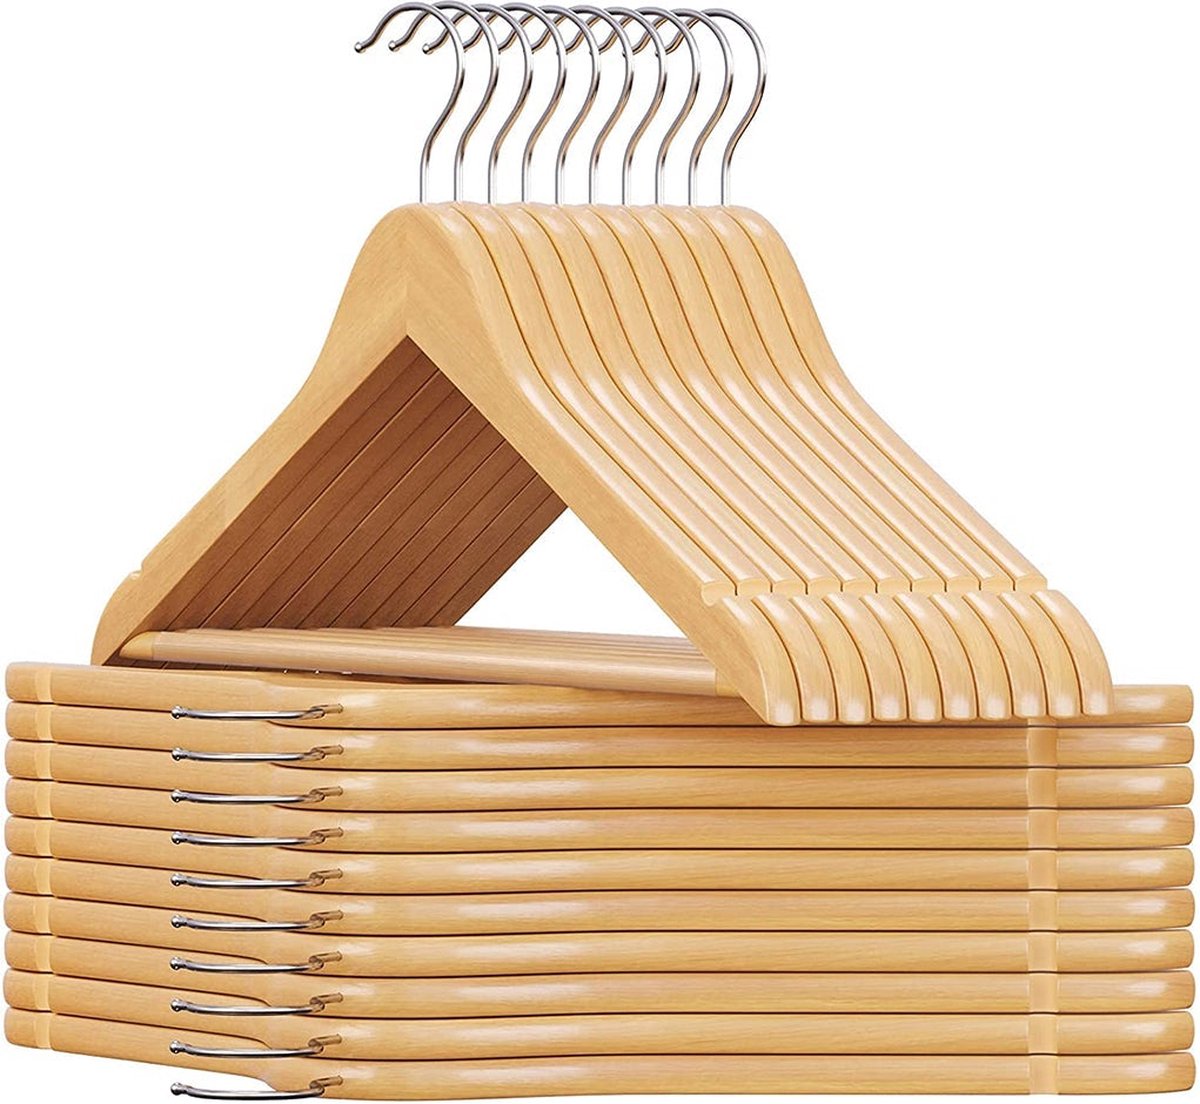 Houten kleerhanger - Set van 20 - Massief houten kleerhanger - Anti-slip - 360° draaibare haak